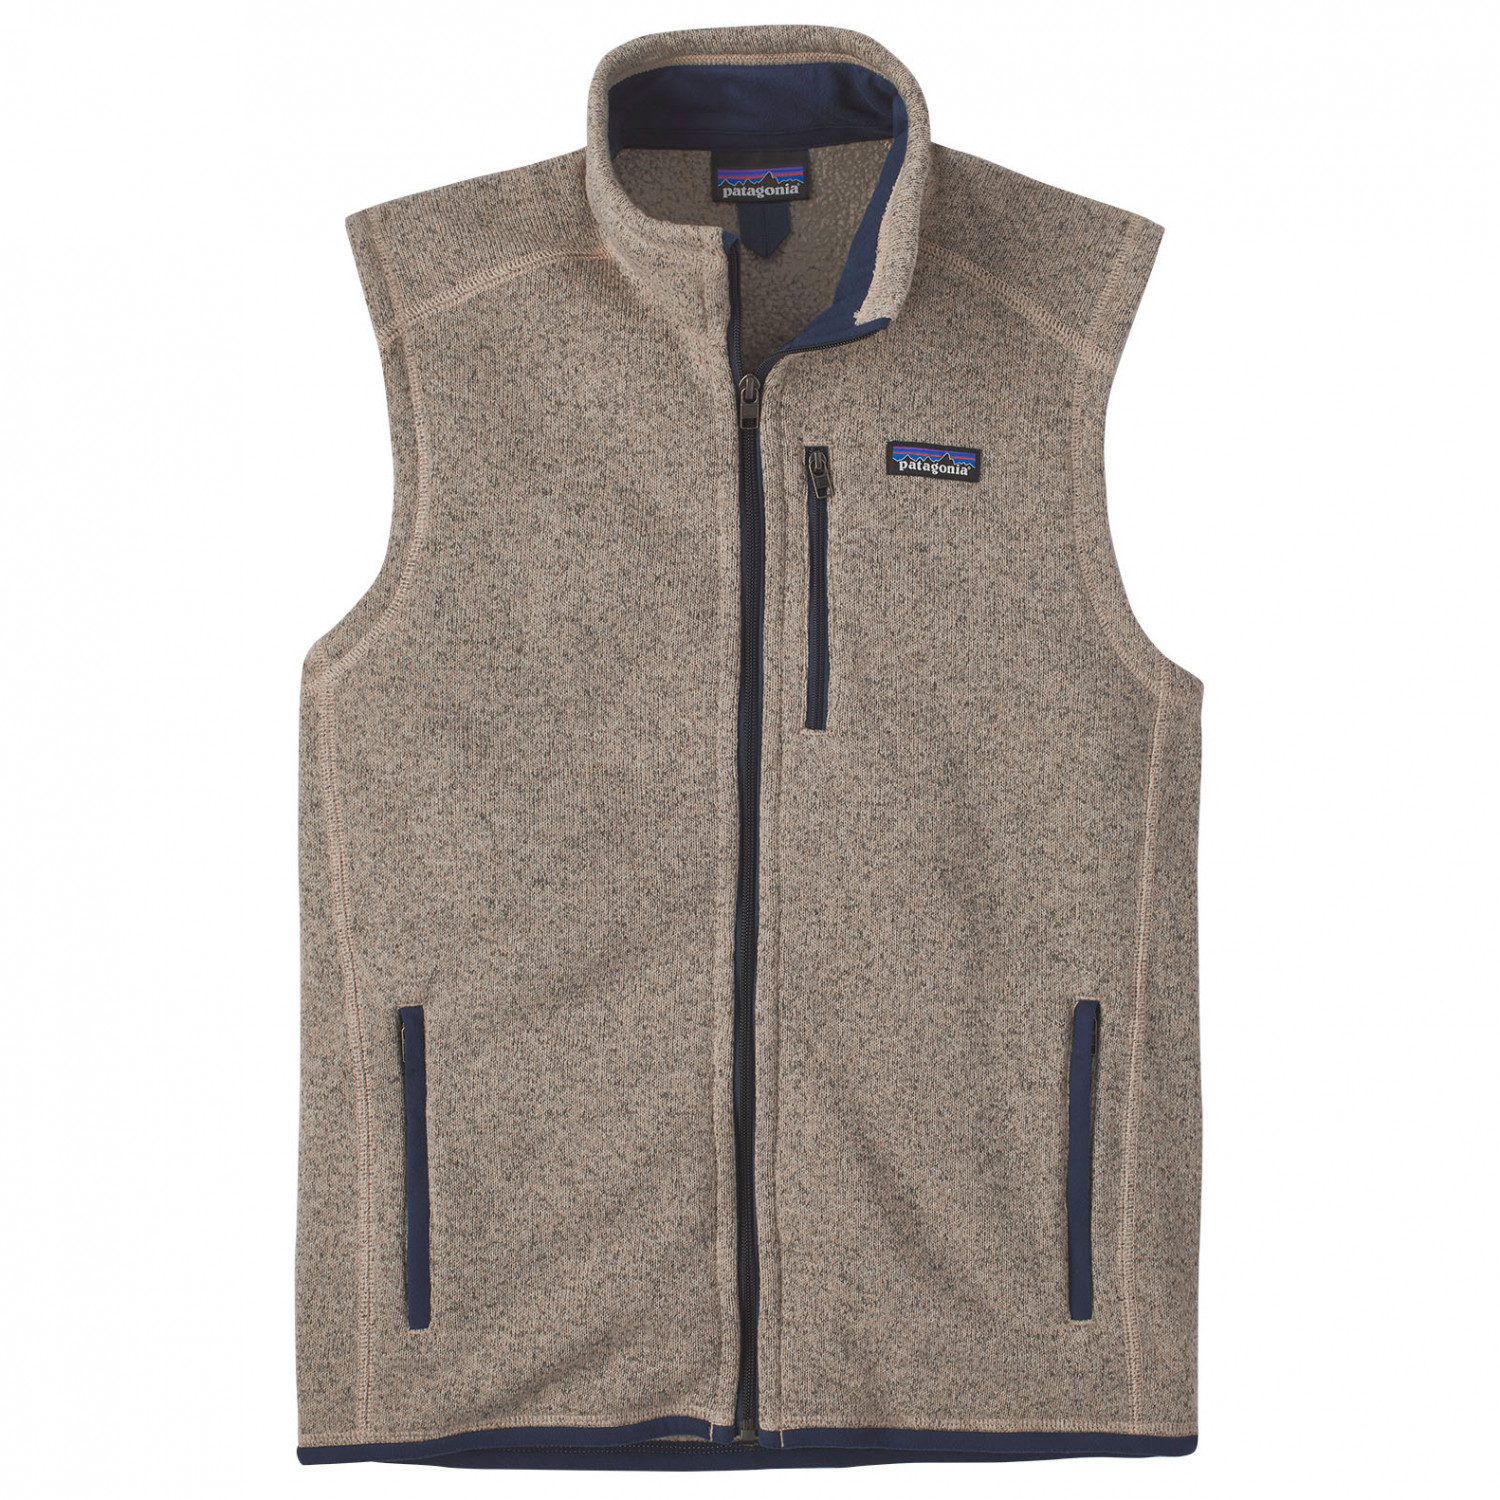 Жилет из синтетического волокна Patagonia Better Vest, цвет Oar Tan